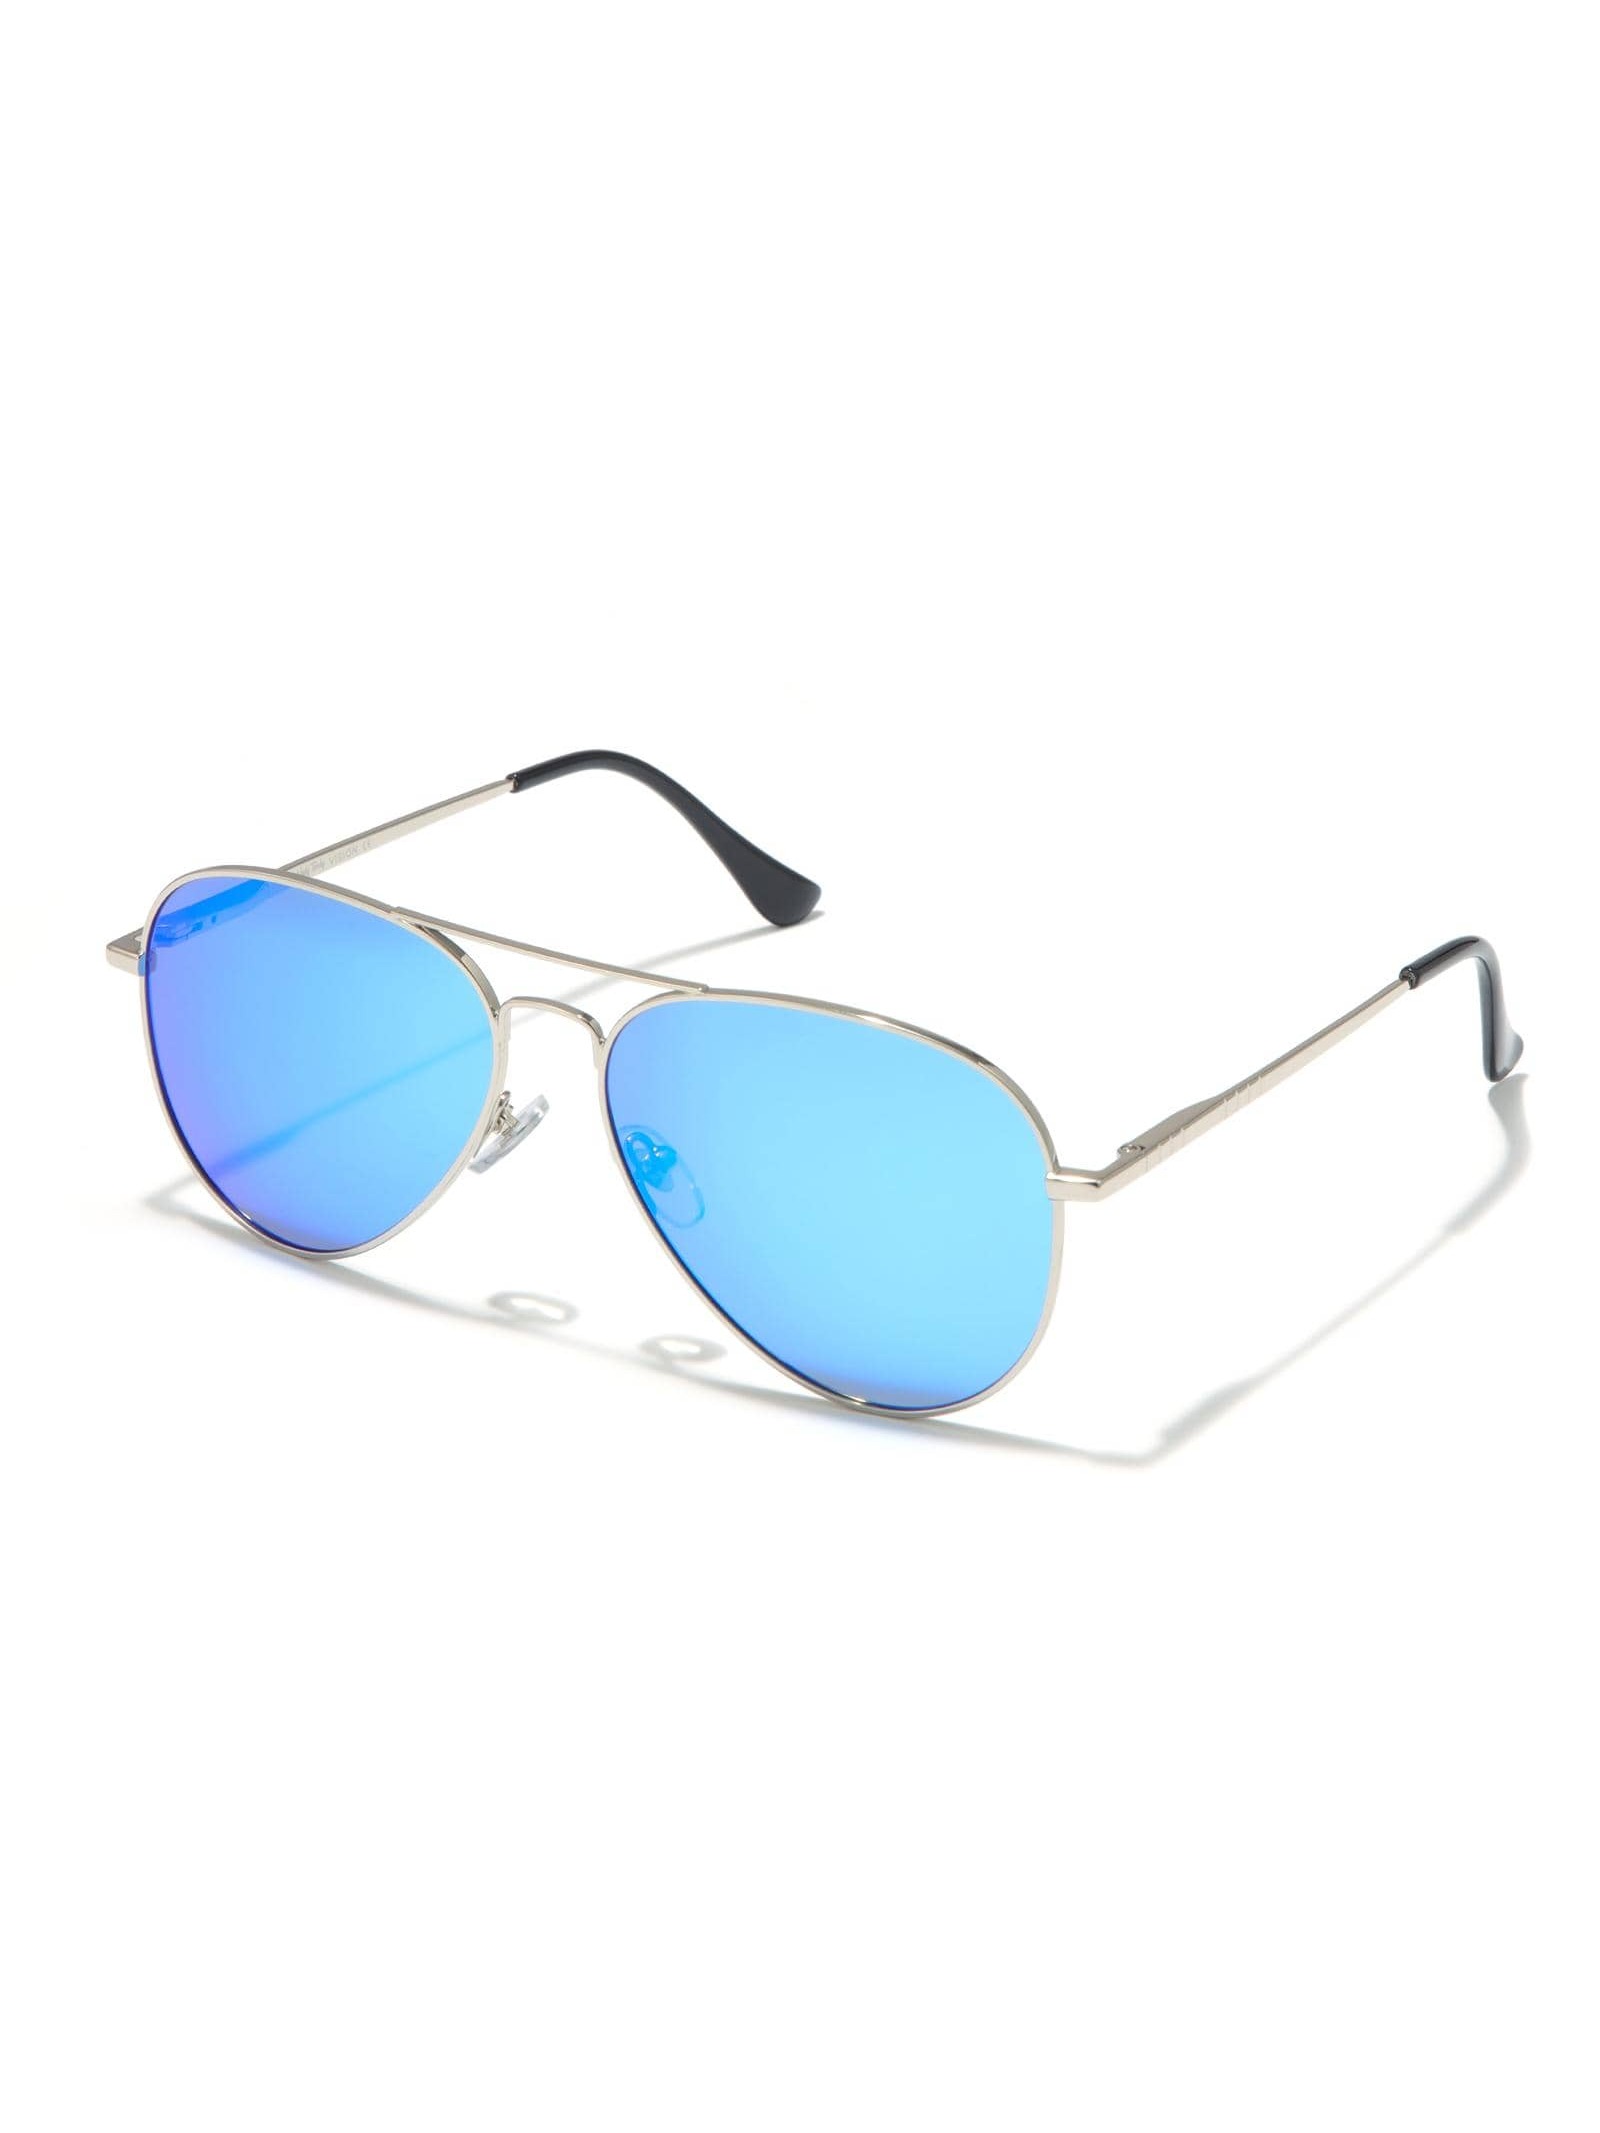 Солнцезащитные очки-авиаторы Veda Tinda для женщин и мужчин солнцезащитные очки carrera авиаторы для мужчин черный